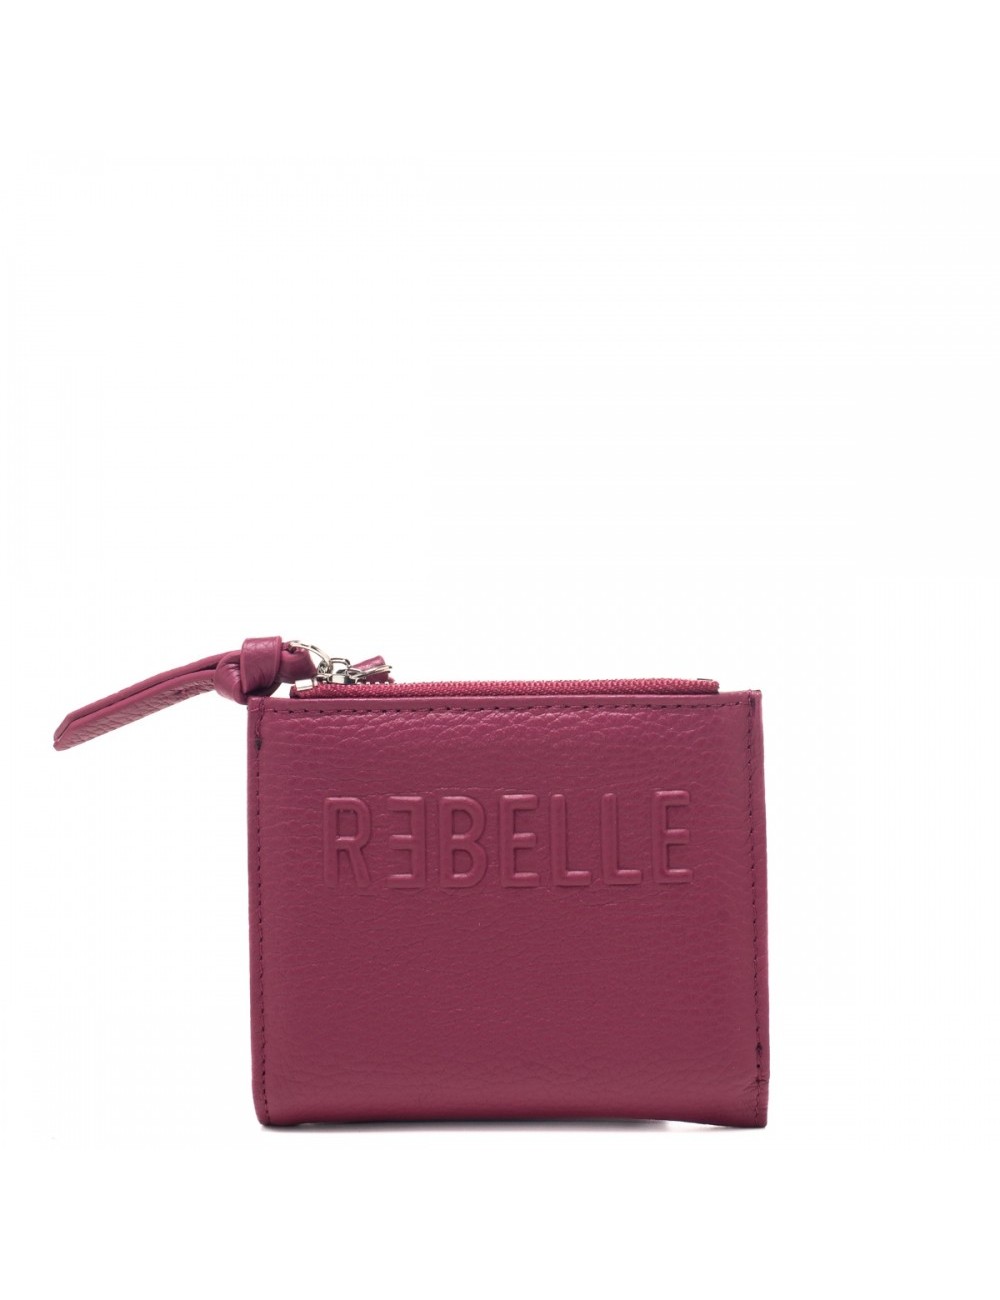 Rebelle - PORTAFOGLIO CON PORTA TESSERE - SMALL CARD HOL/PURPLE